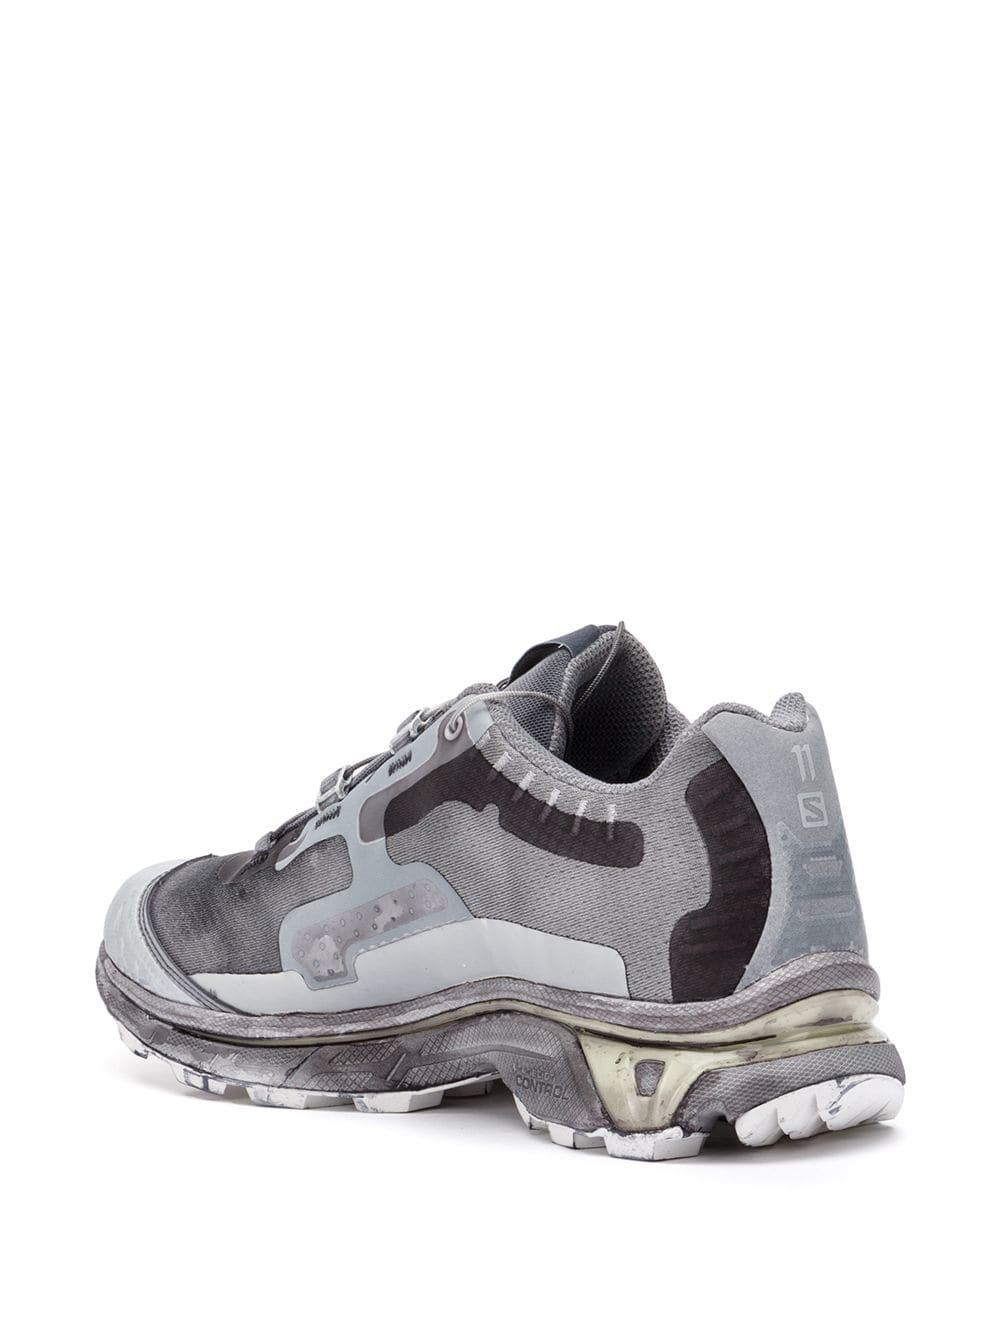 Boris Bidjan Saberi 11 Rubber Contrast Low-top Sneakers in Grey (Gray ...